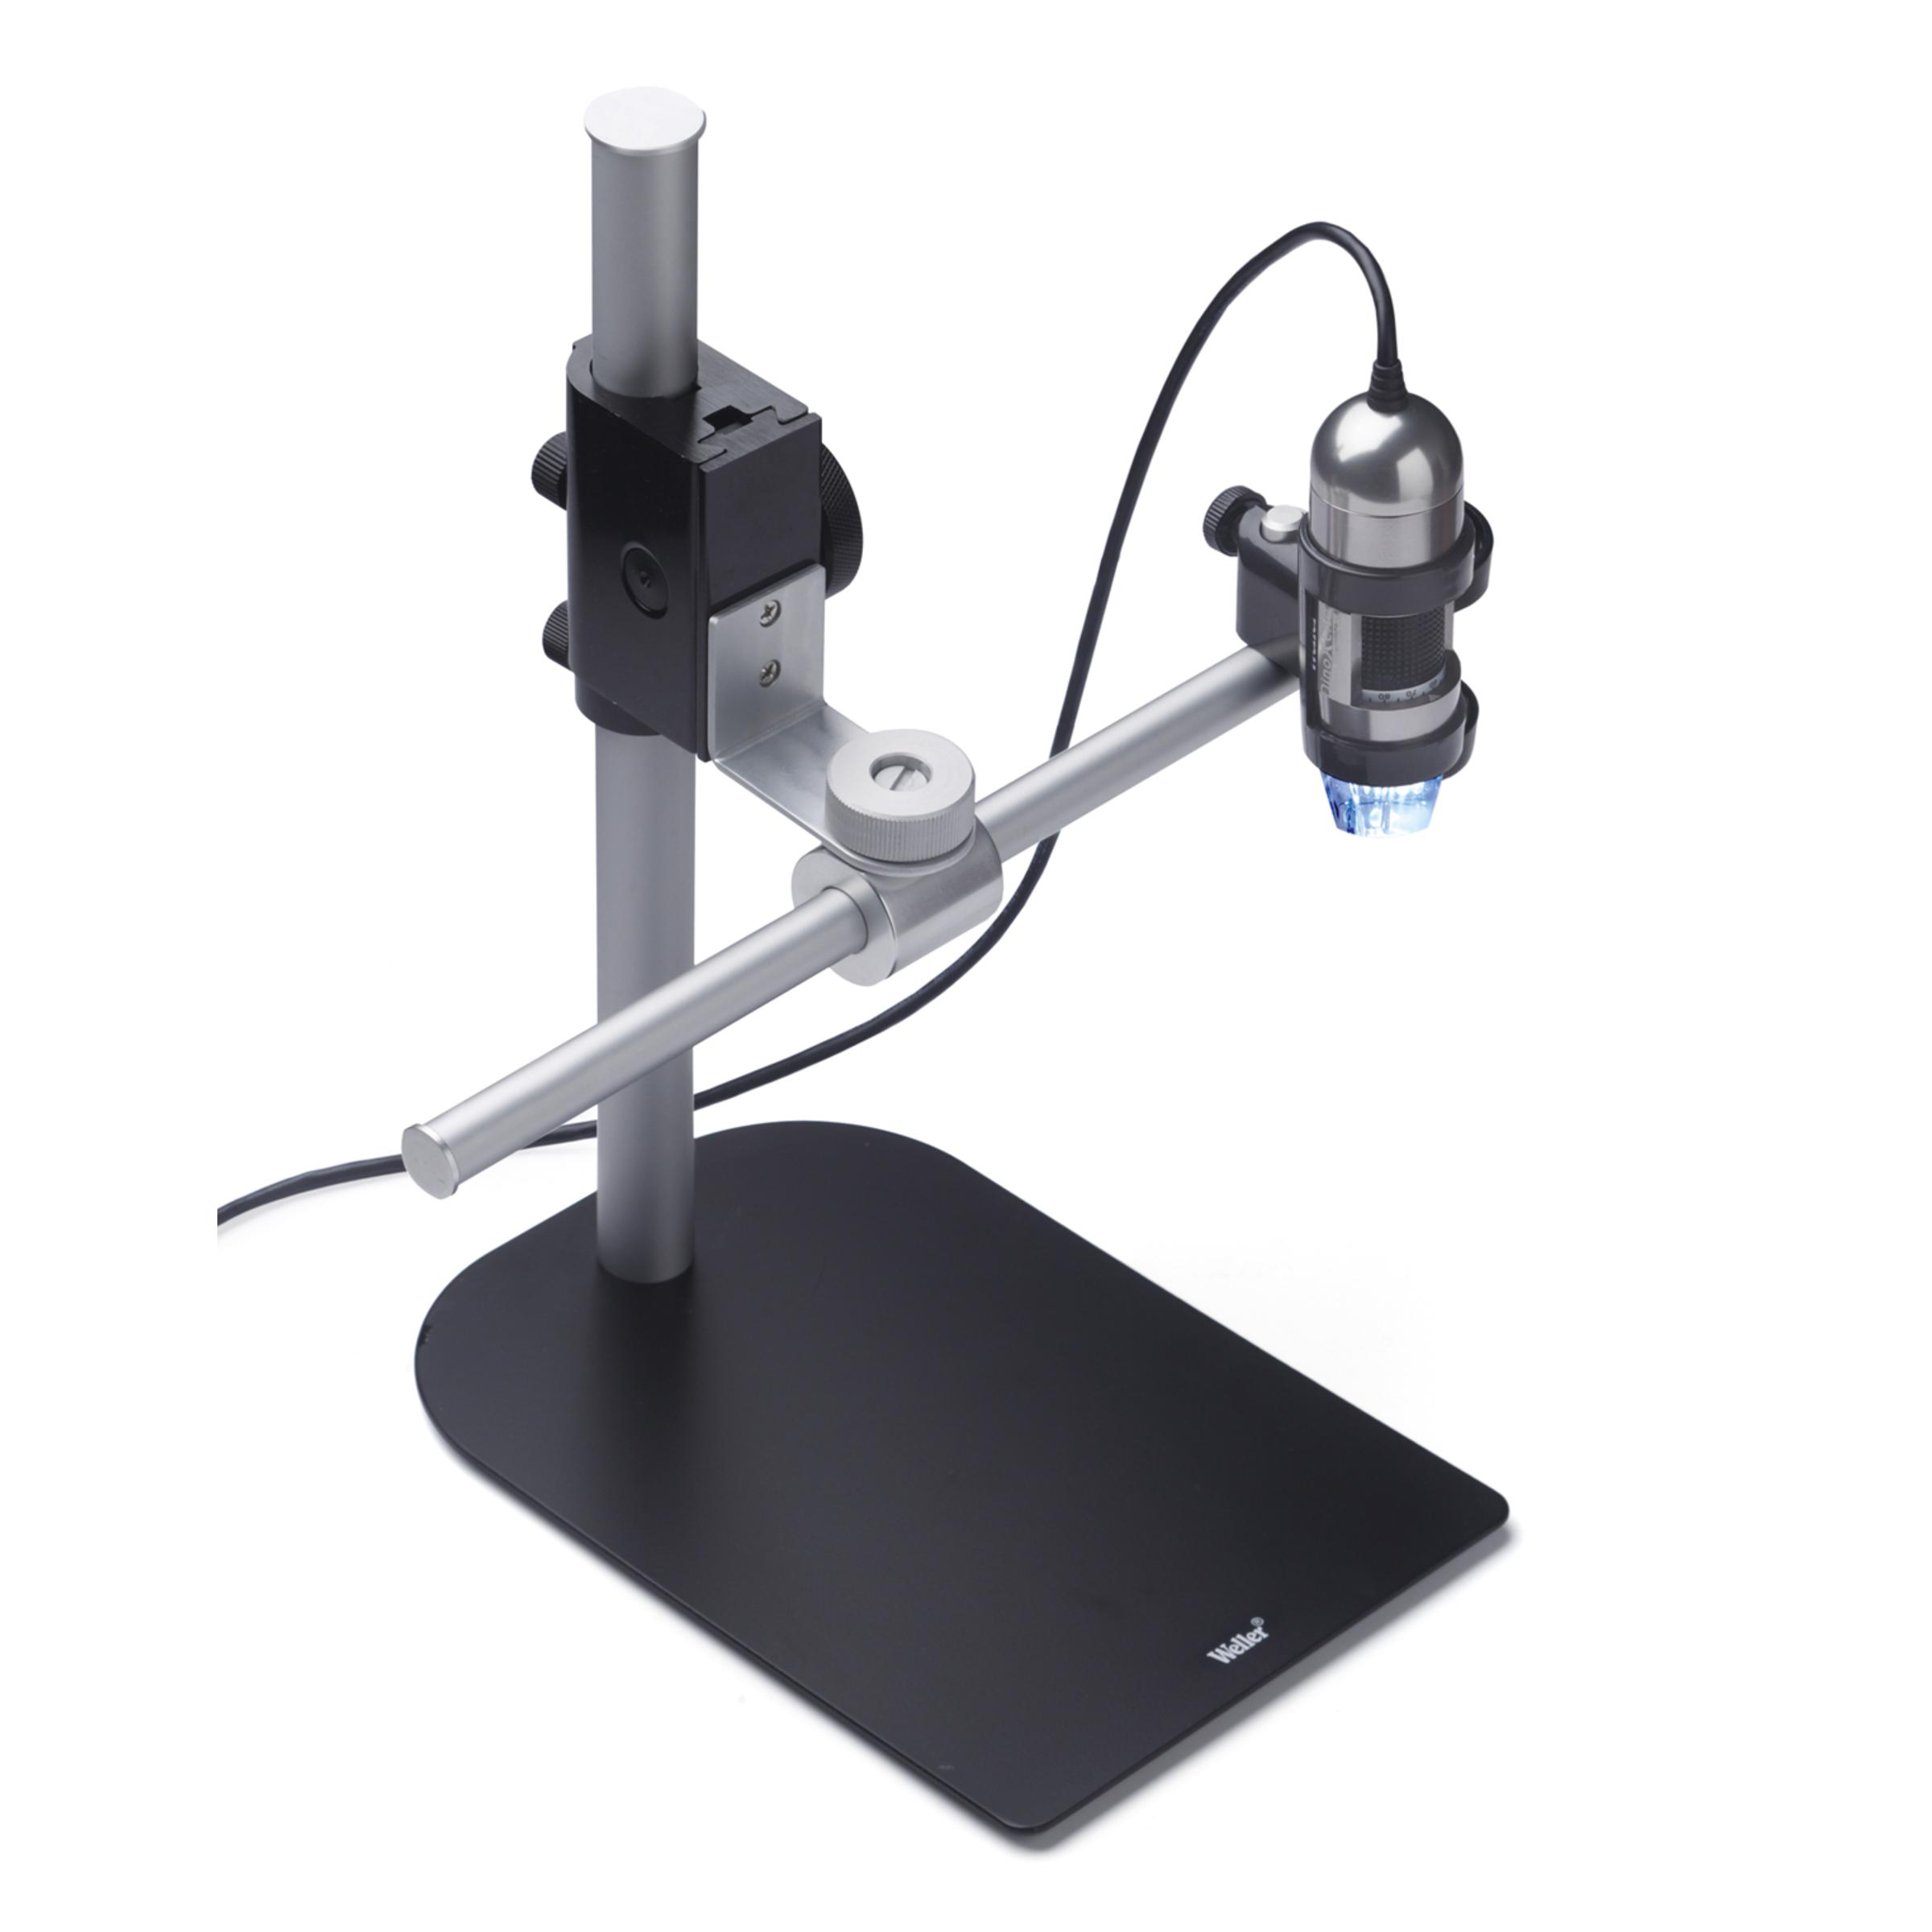 USB - микроскоп с поляризационным фильтром и регулируемой стойкой арт. 0051383999N